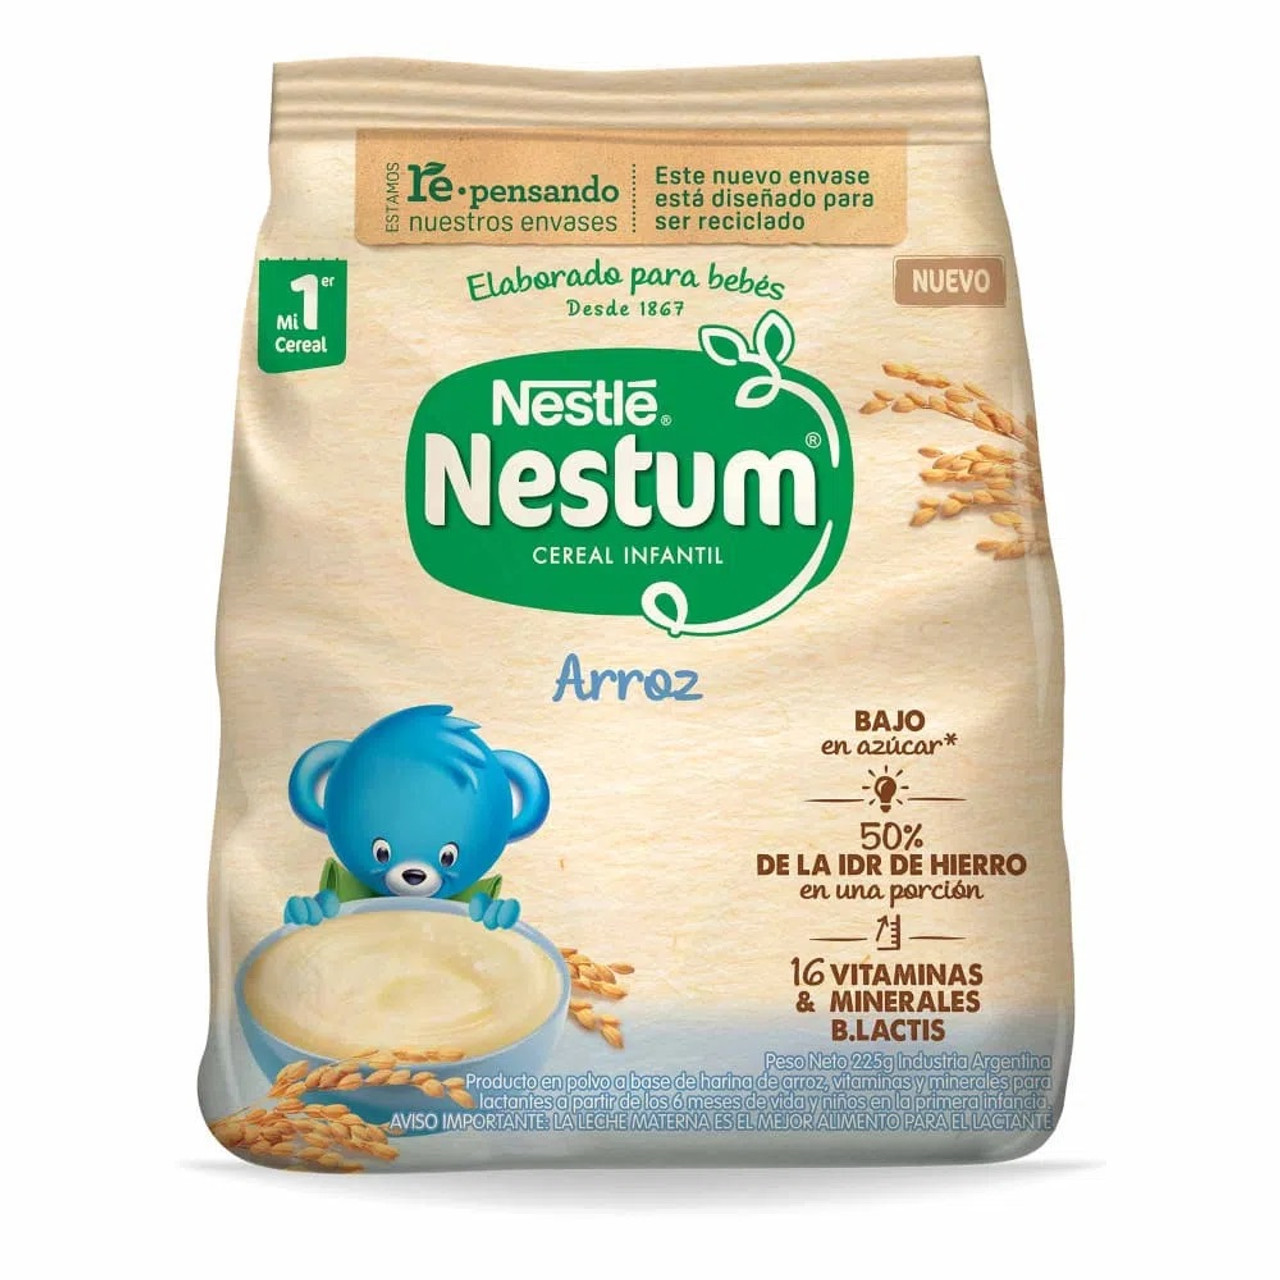 Nestum Arroz Baby Food Powder Made with Rice Flour, 225 g / 7.9 oz bag